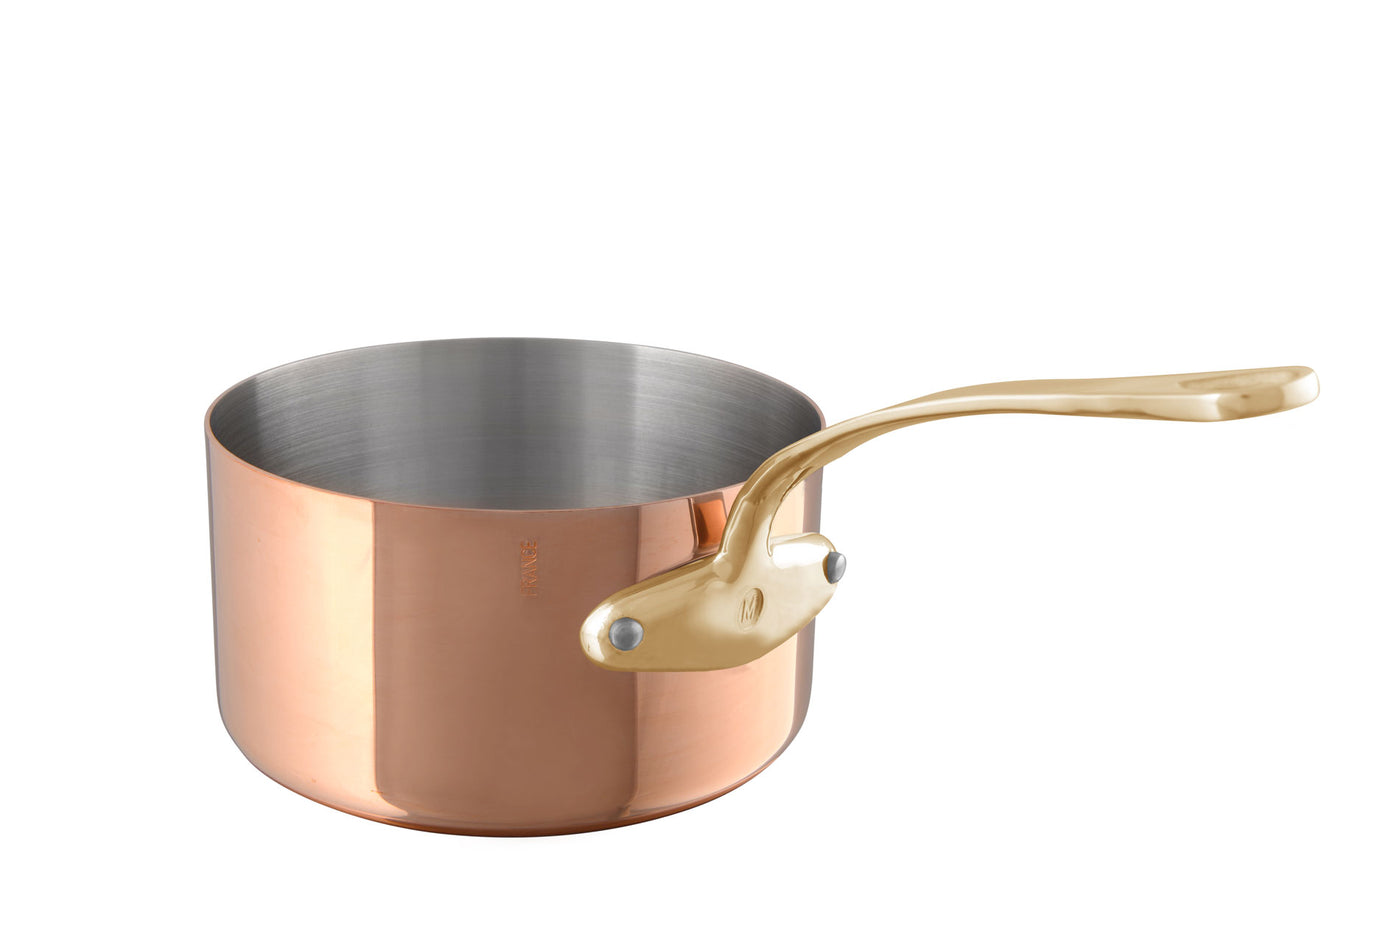 Mauviel M'heritage M200B Copper Saucepan w/Lid, Bronze Handles 0.8-qt. - Kitchen Universe